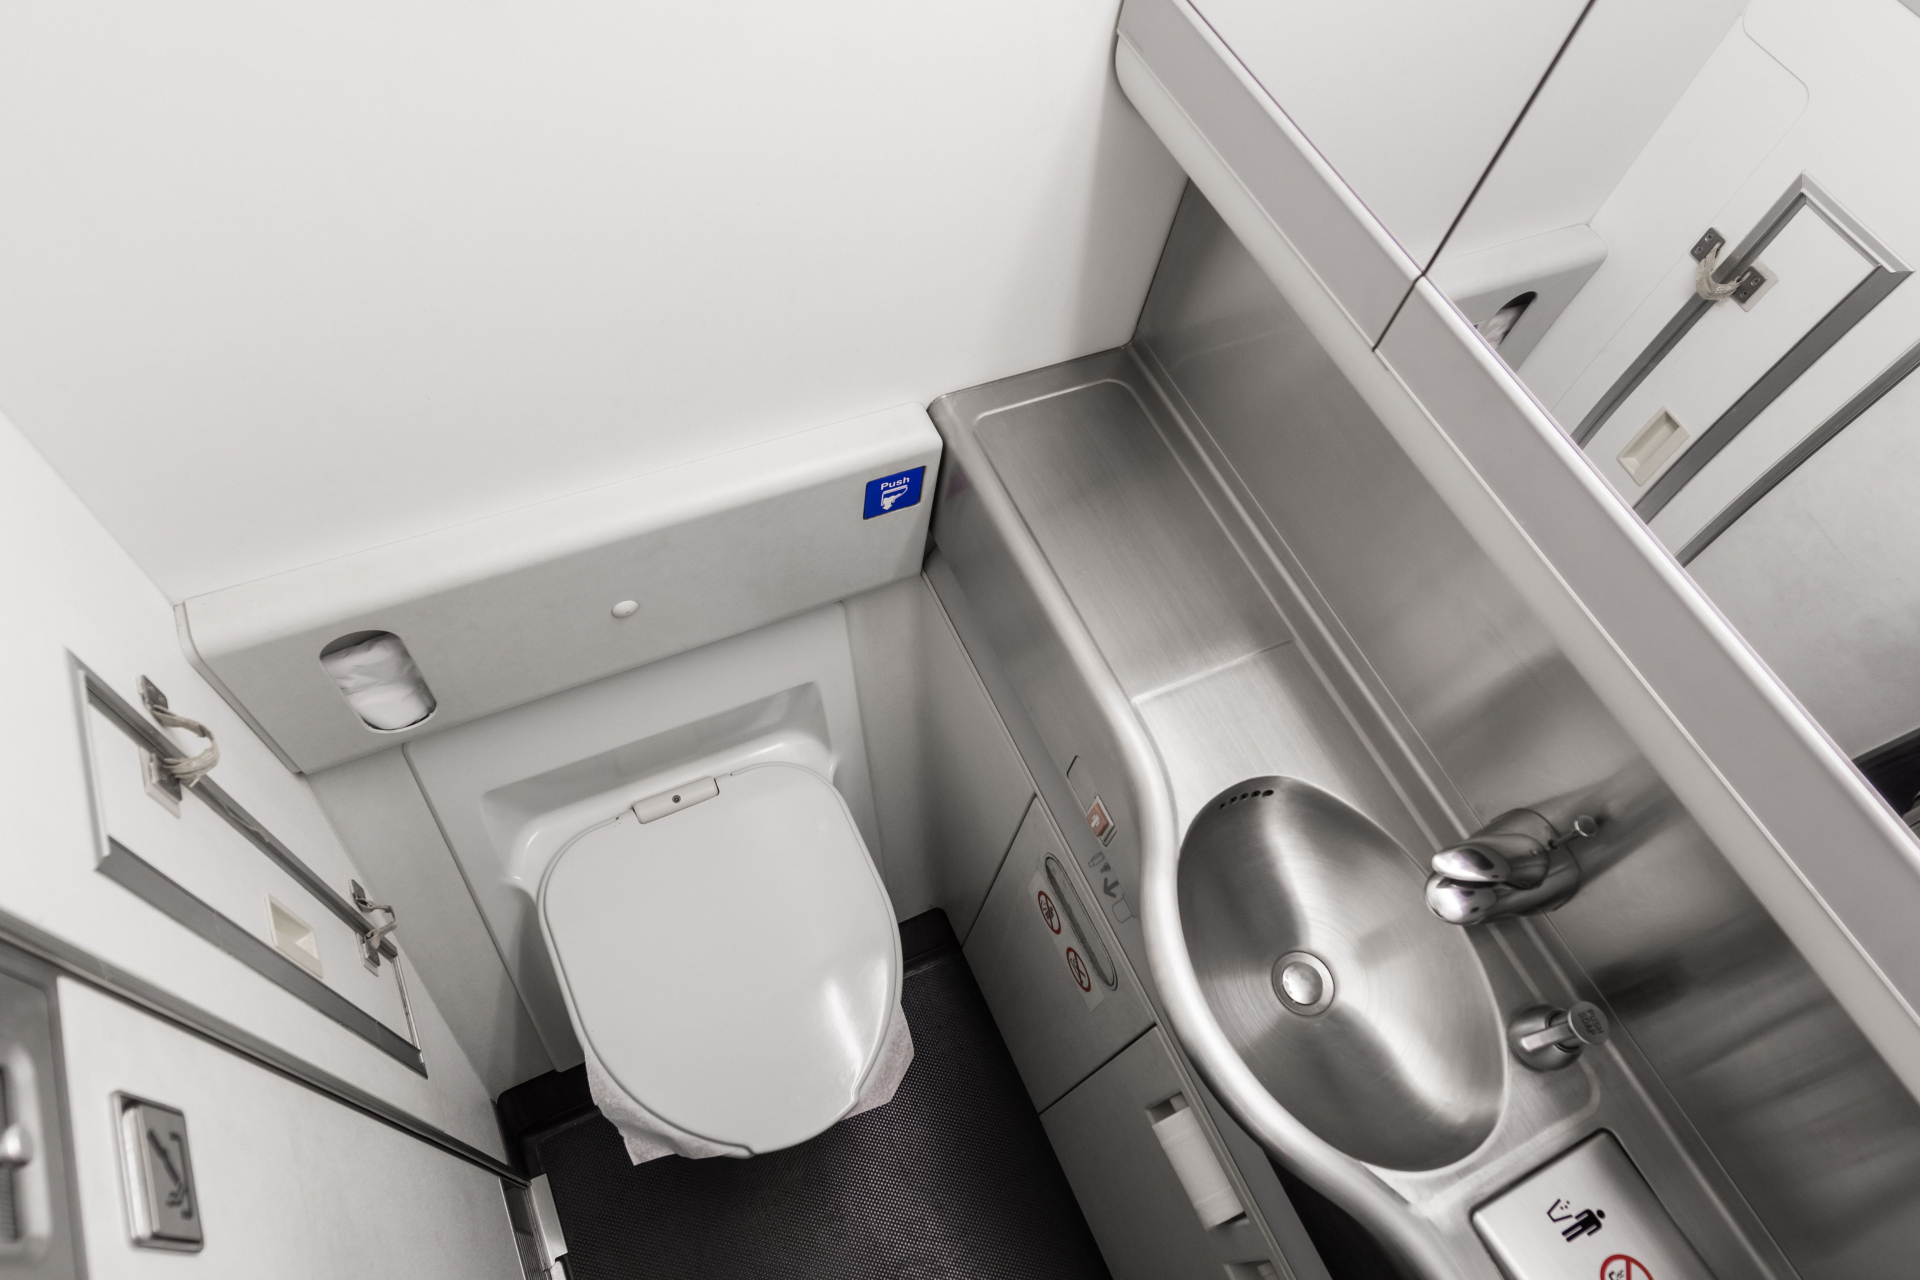 Тайното място в тоалетната на самолета, за което всички трябва да знаят ВИДЕО